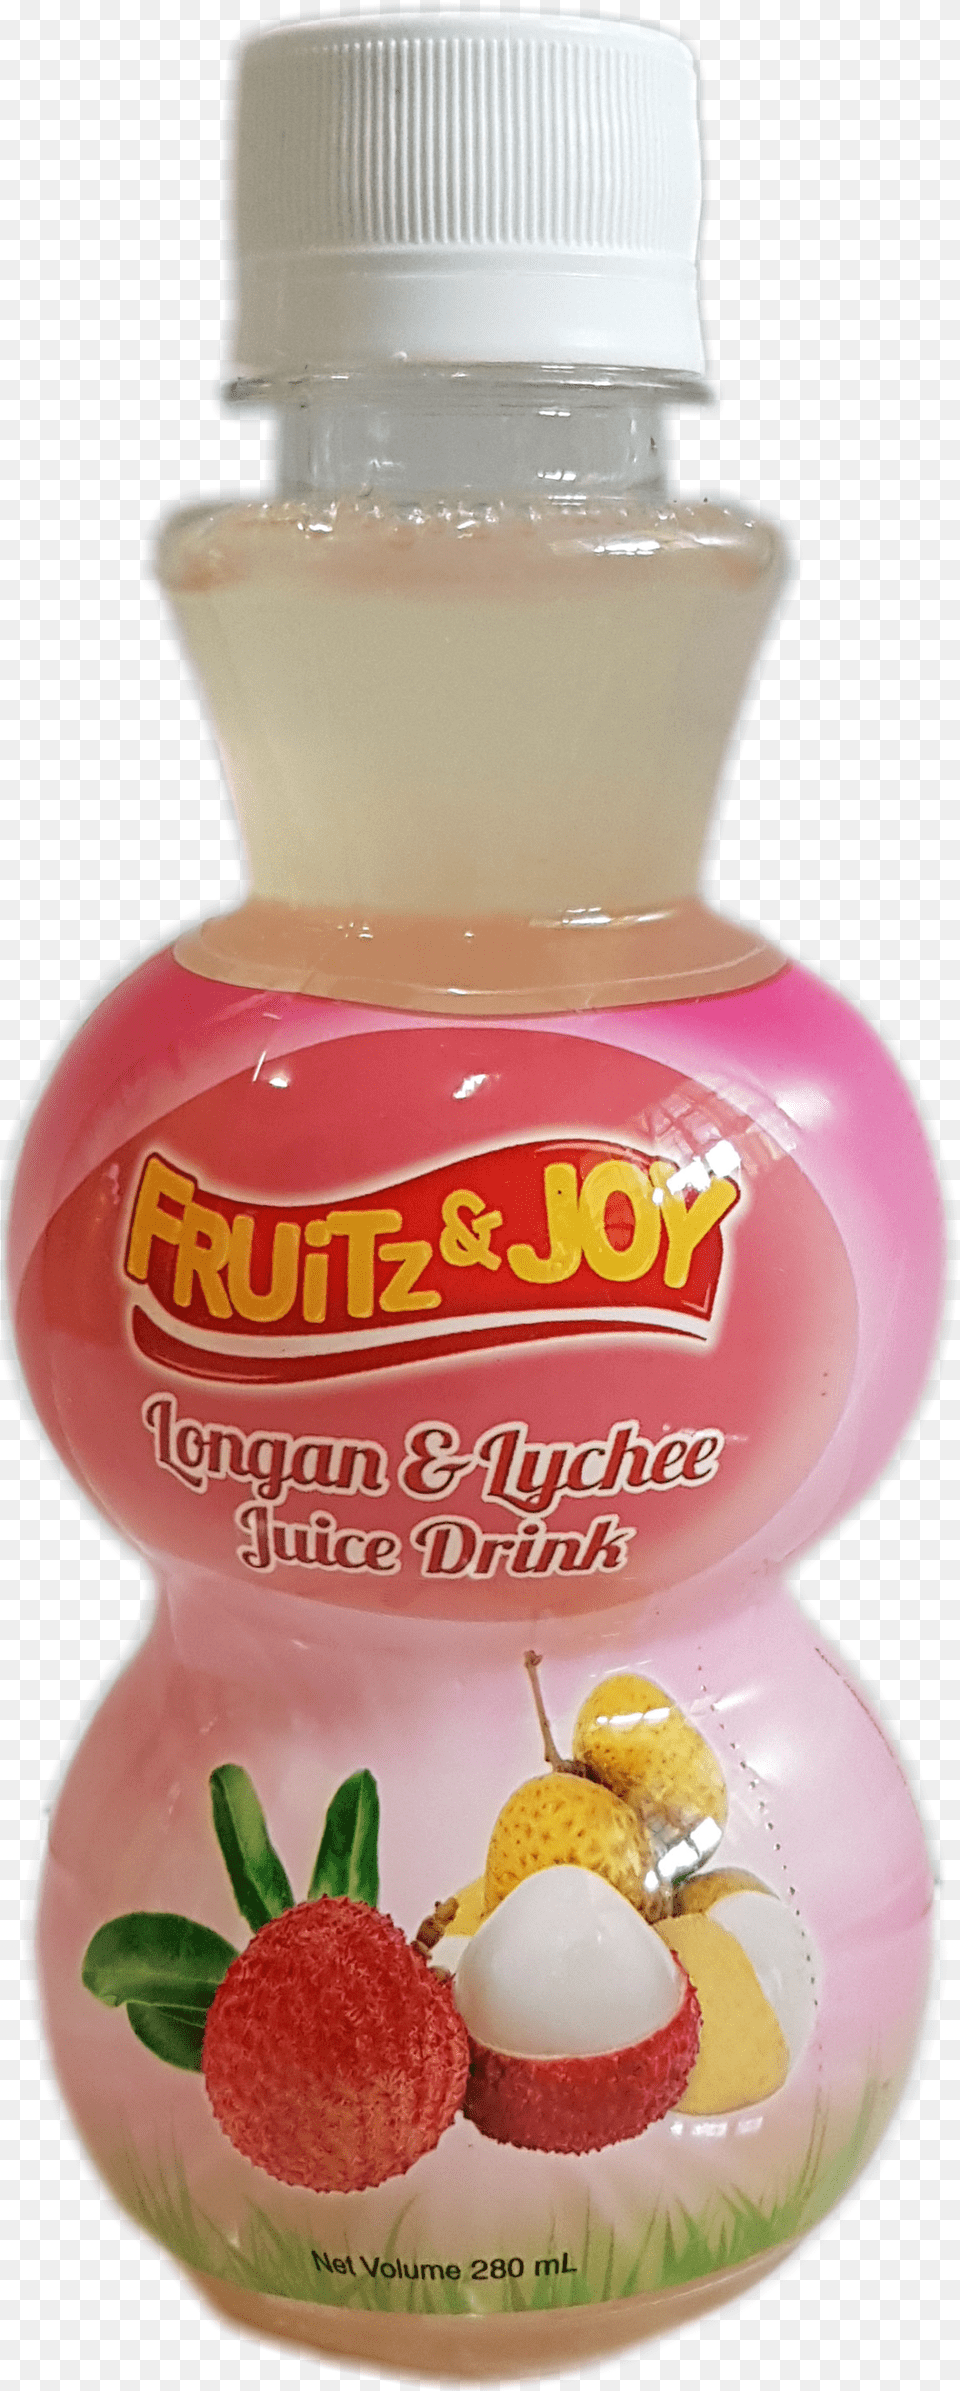 Lychee Juice Drink Perfume Png